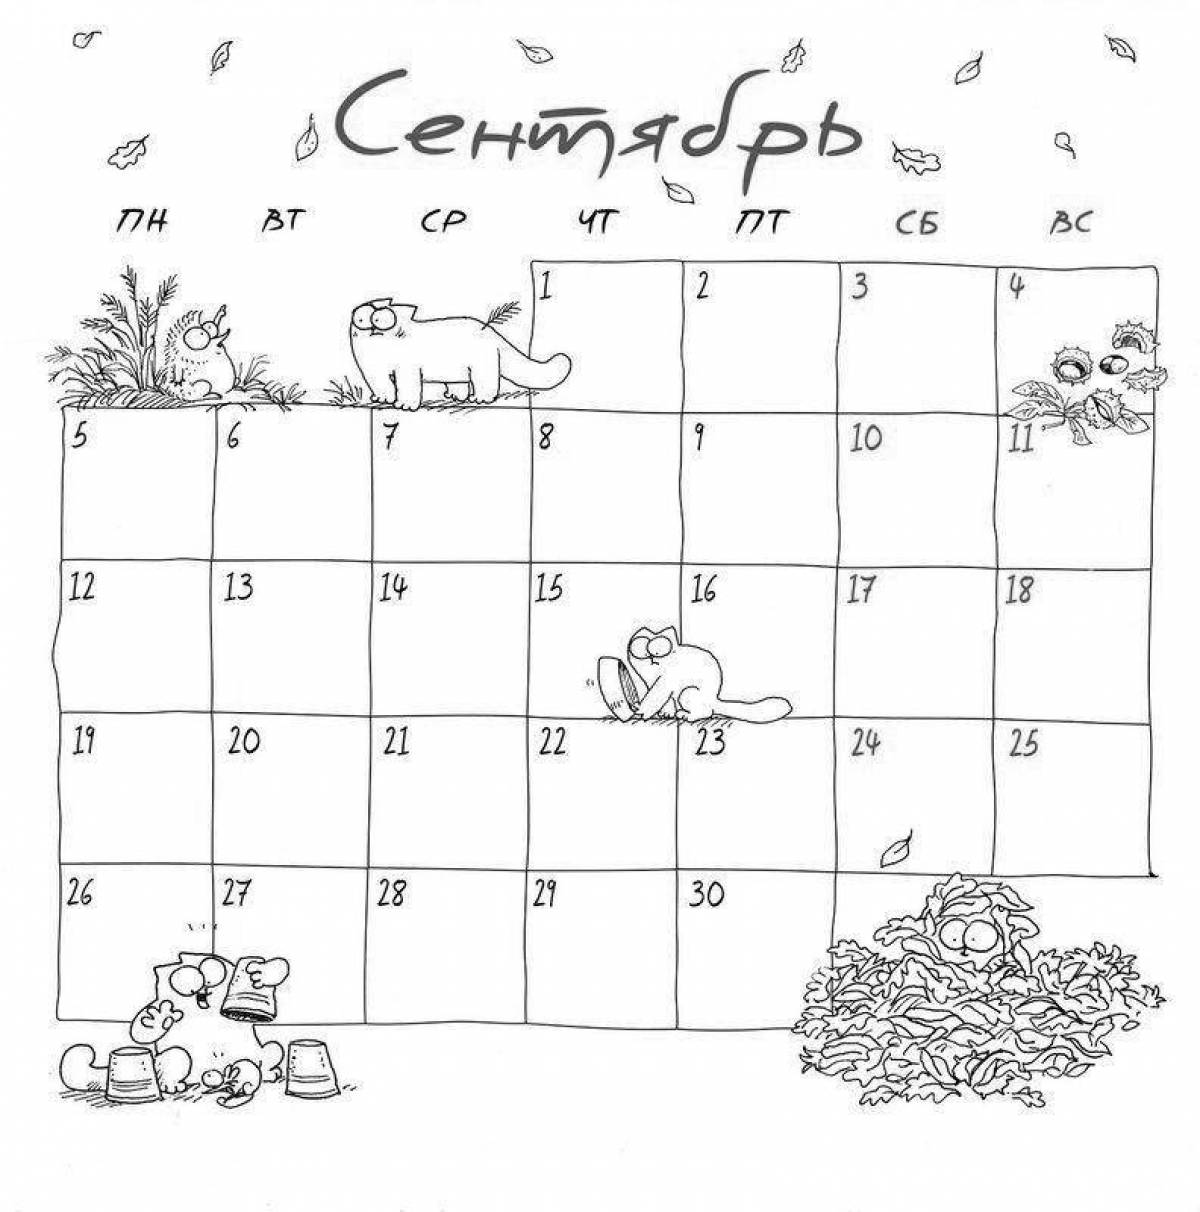 Кот Саймона календарь